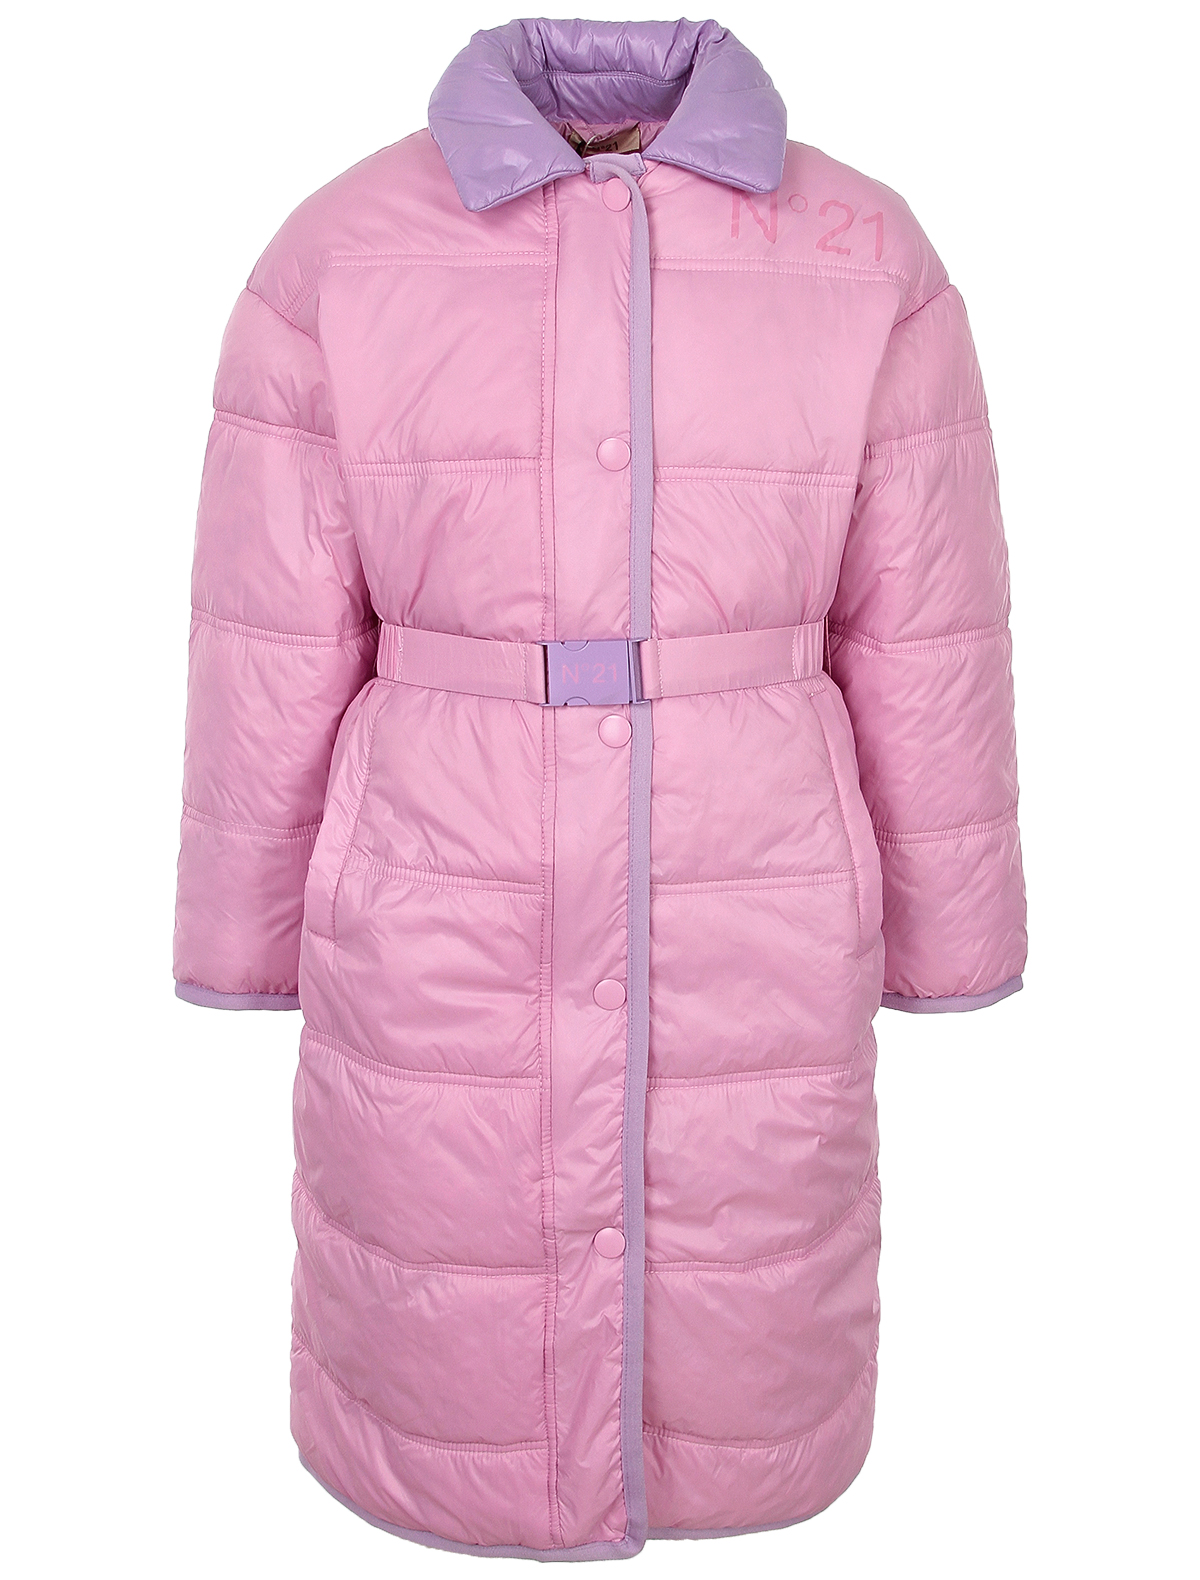 Пальто №21 kids 2480511, цвет розовый, размер 6 1124509281704 - фото 1